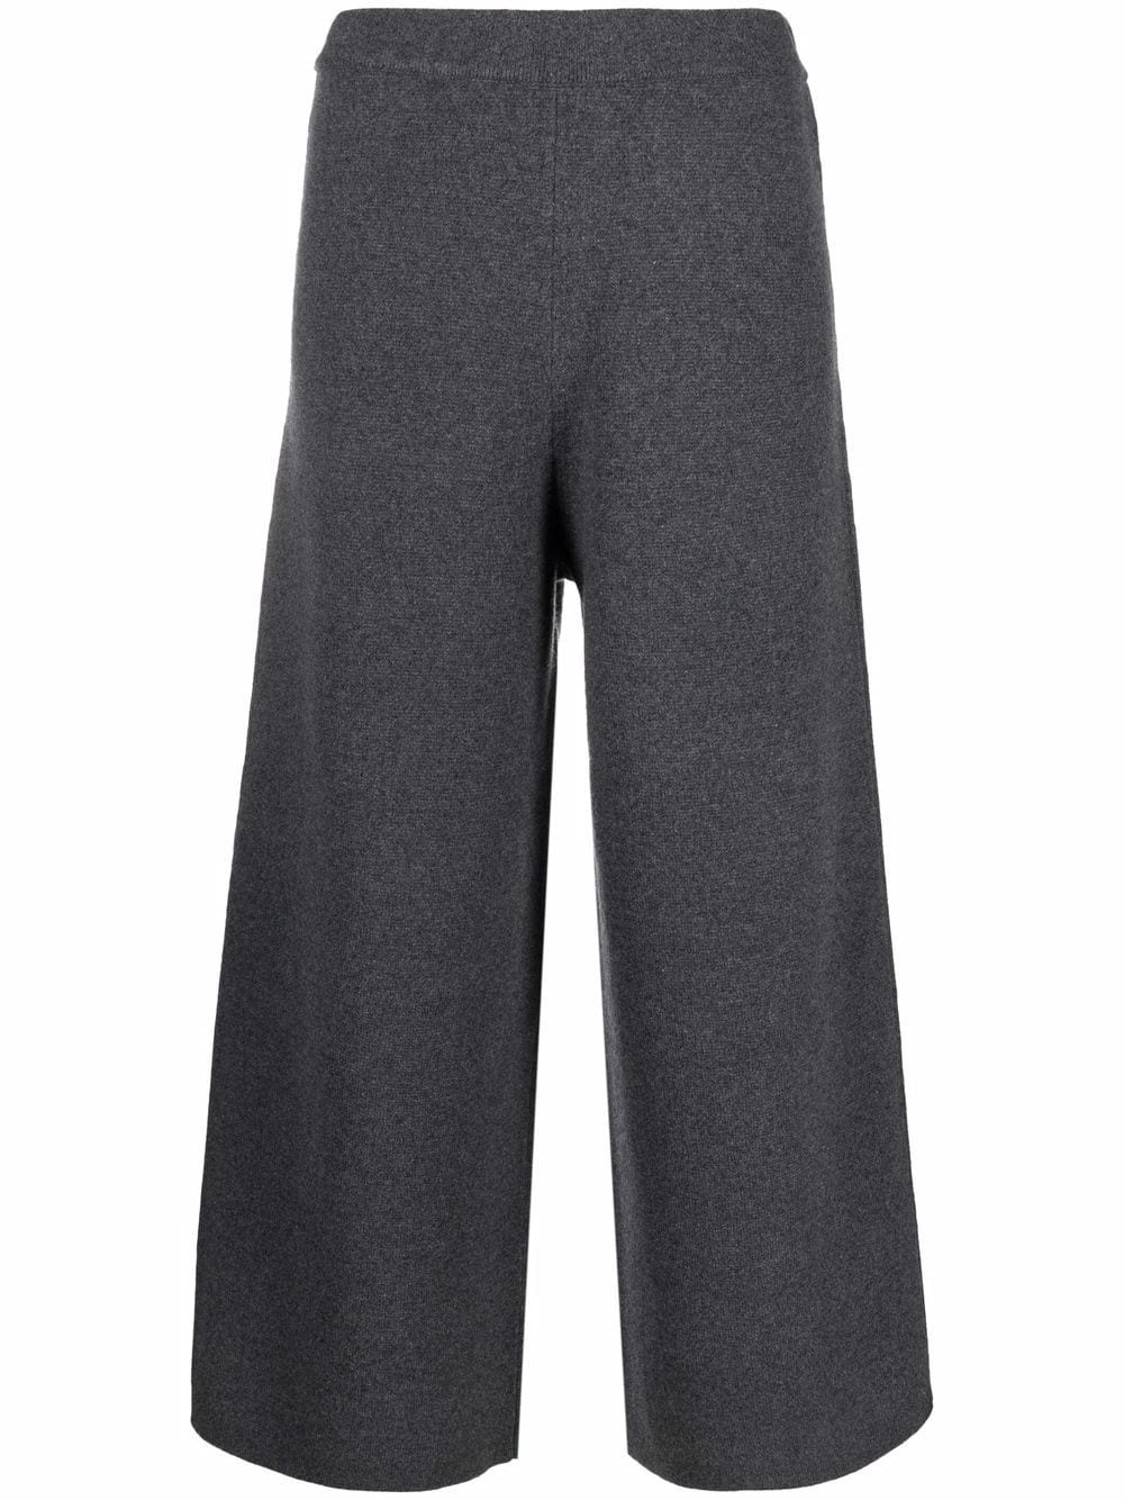 shop Joseph Saldi Pantaloni: Pantaloni Joseph, modello cropped, lunghezza alla caviglia, gamba ampia, elastico in vita, senza tasche.

Composizione: 100% lana. number 2270